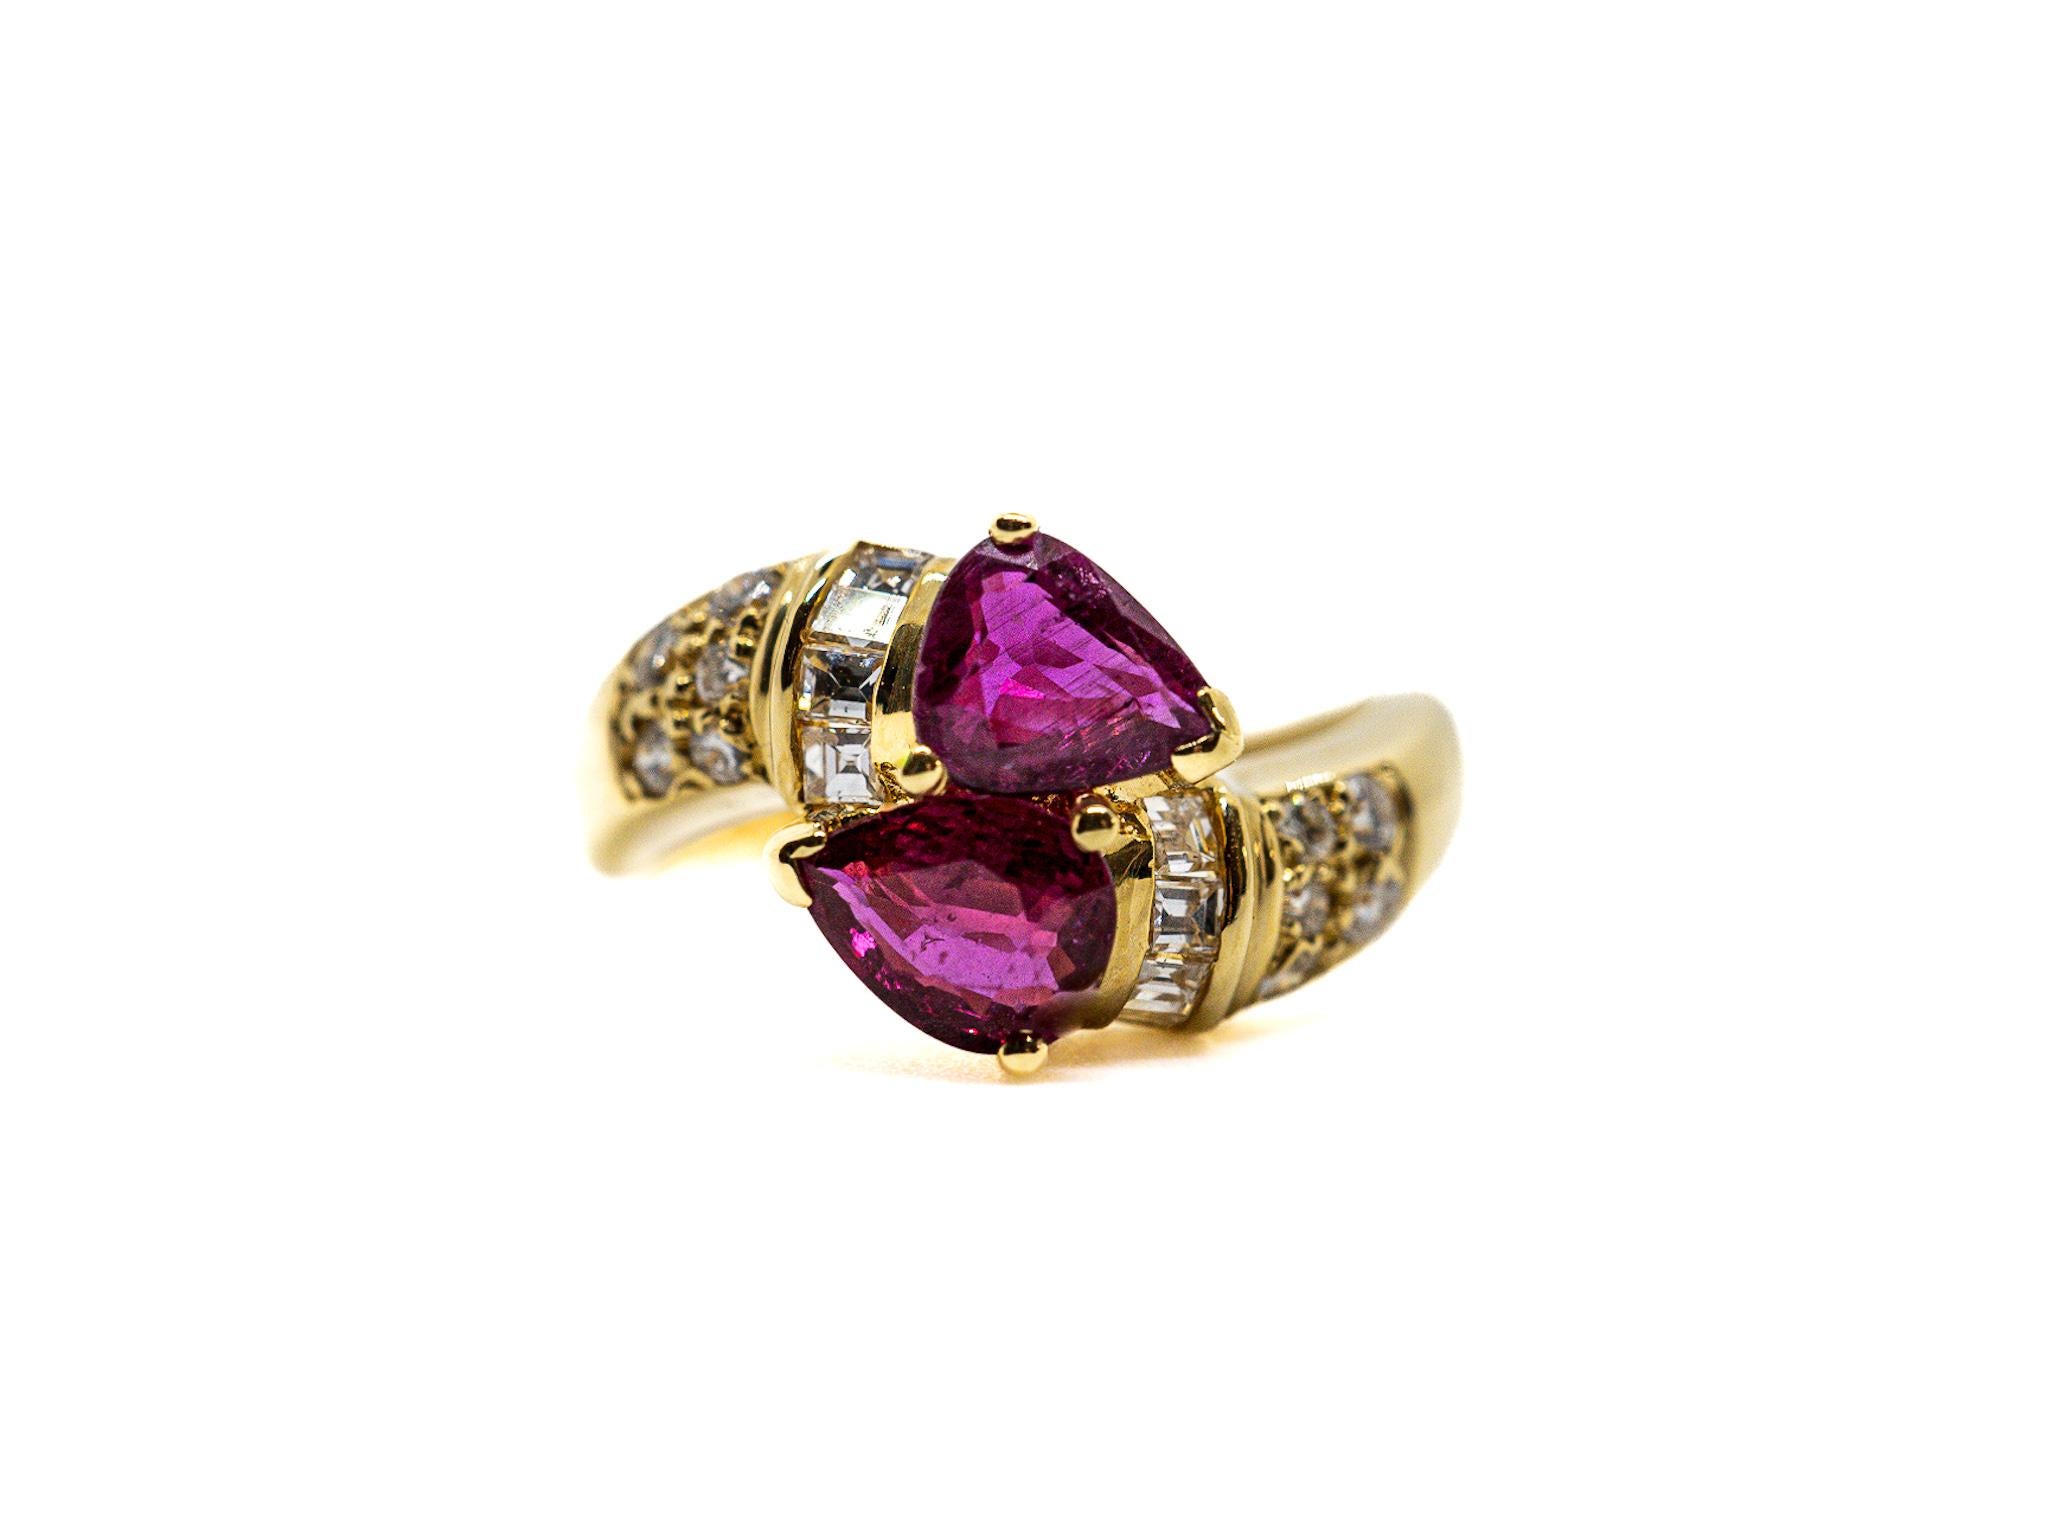 Dieser Ring aus 18 Karat Gold zeigt zwei birnenförmige Rubine, die von einem Cluster aus Baguette-Diamanten und kleineren Diamanten mit einem Gesamtgewicht von etwa 0,5 ct umgeben sind. 

Die Rubine verleihen dem Ring ein leuchtendes Rot, während